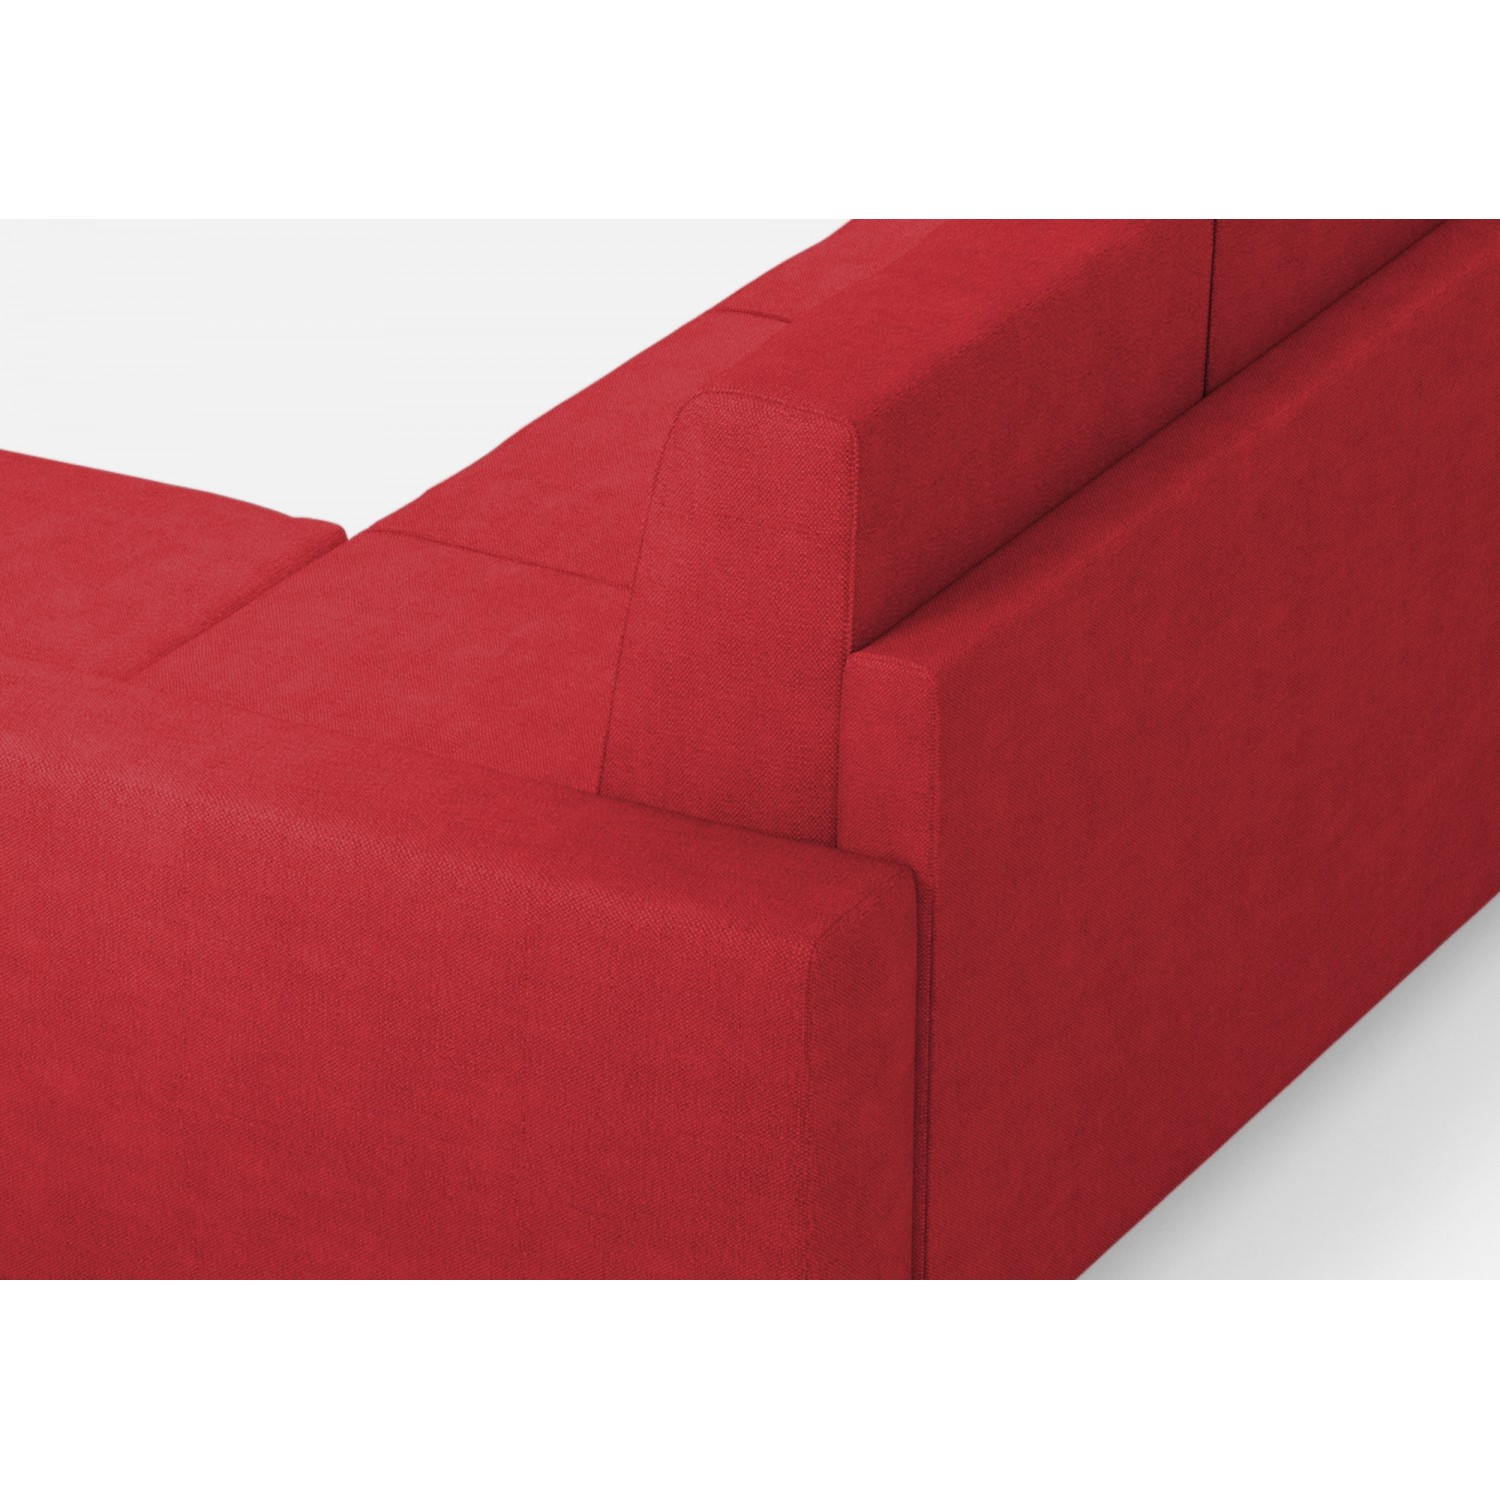 Ityhome Divano Sakar 2 posti (due sedute da 60cm) + pouf misure esterne L.148 P.155 colore rosso